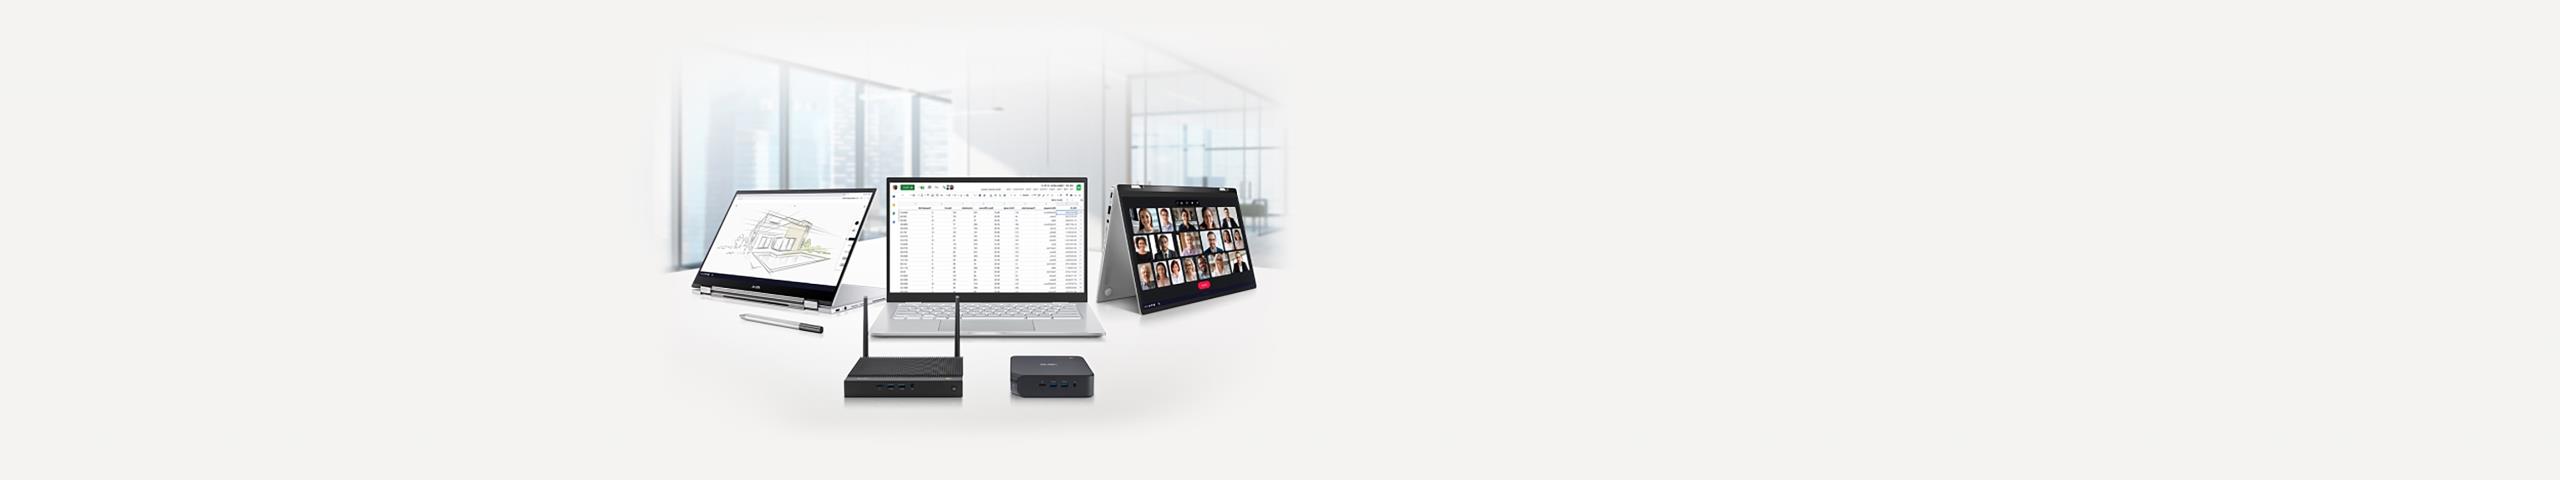 عرض ثلاثة أجهزة ASUS Chromebook و ASUS Pen و Chromebox وجهاز توجيه WiFi. الجهاز على اليسار في وضع الخيمة مع Google Meet على الشاشة. الجهاز الأوسط في وضع الكمبيوتر المحمول مع جدول بيانات Excel على الشاشة. الجهاز على اليمين في وضع الوقوف مع Google Canvas على الشاشة.